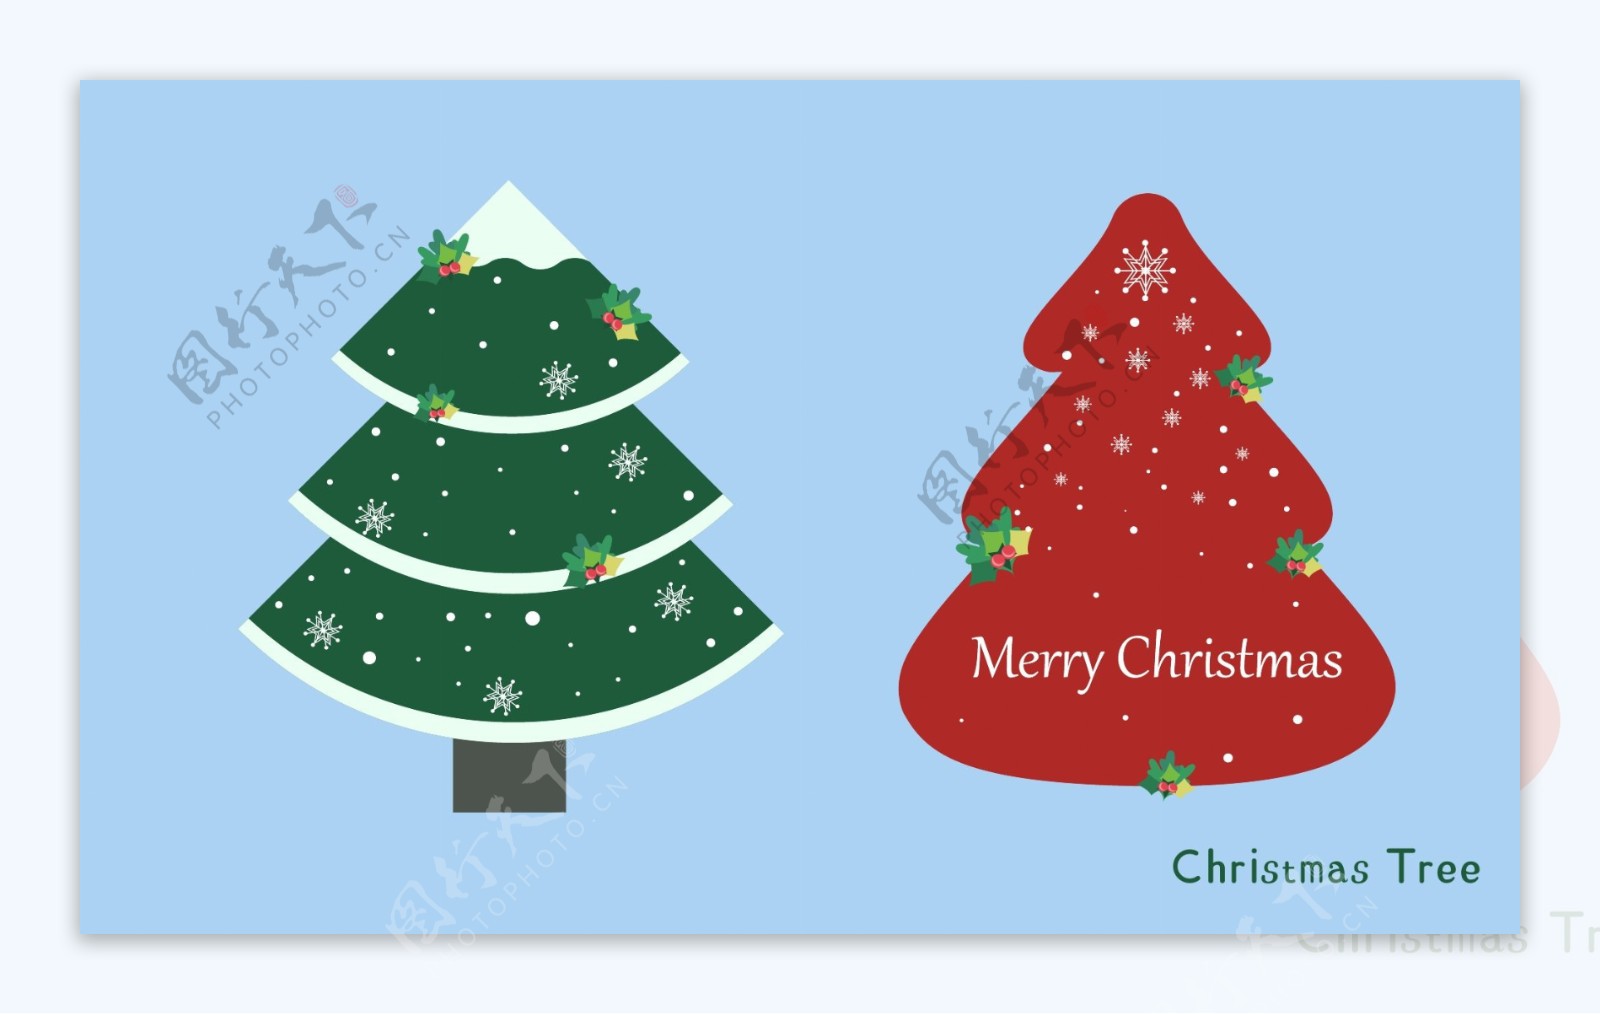 圣诞节日圣诞树装饰铃铛雪花元素插图